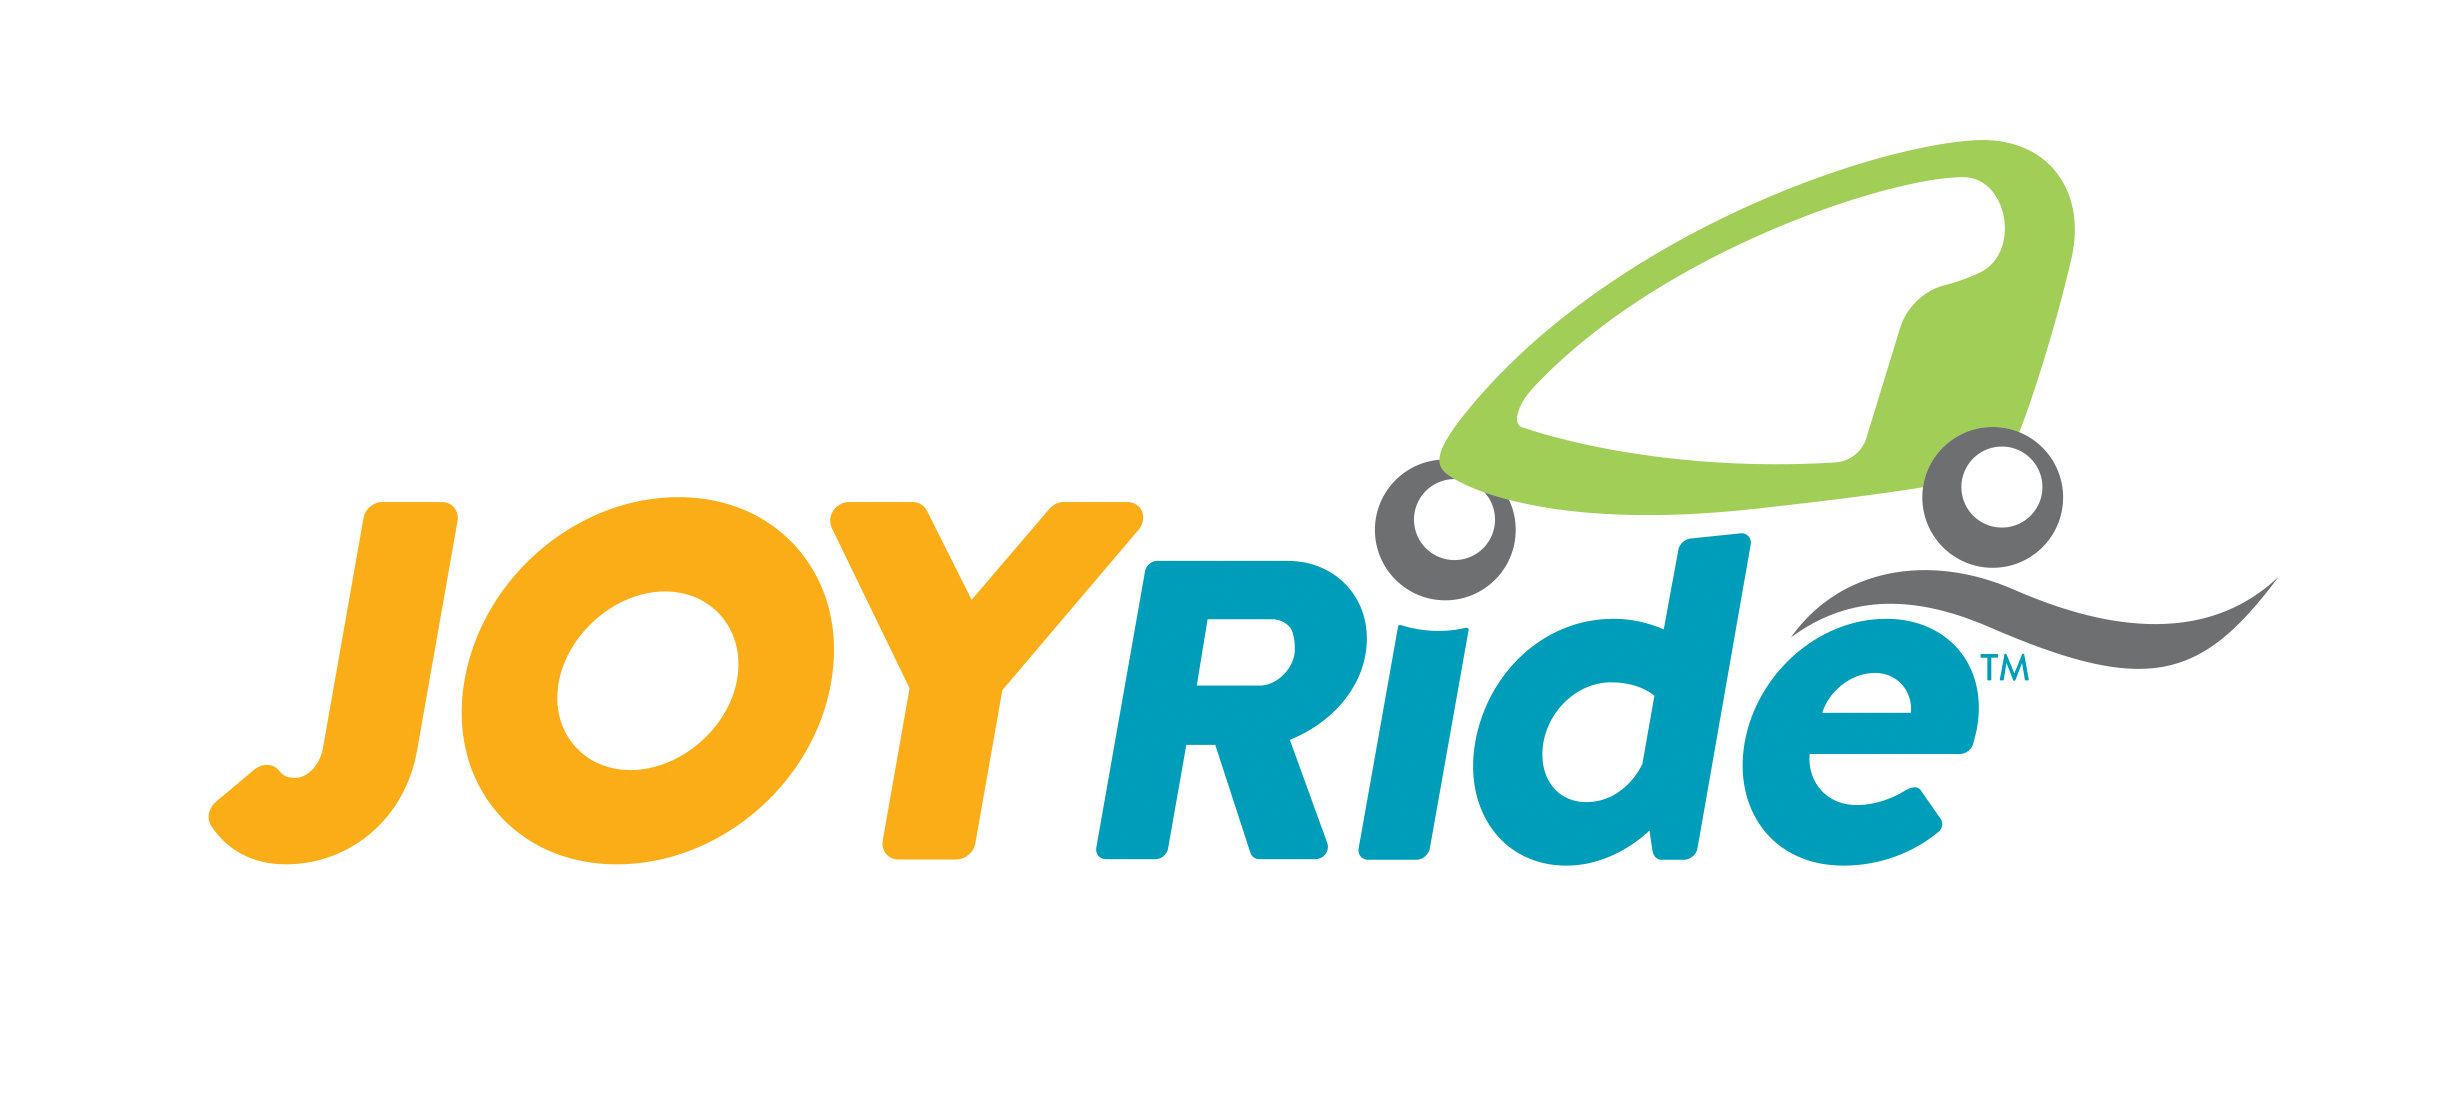 Joyride Michigan City Logo